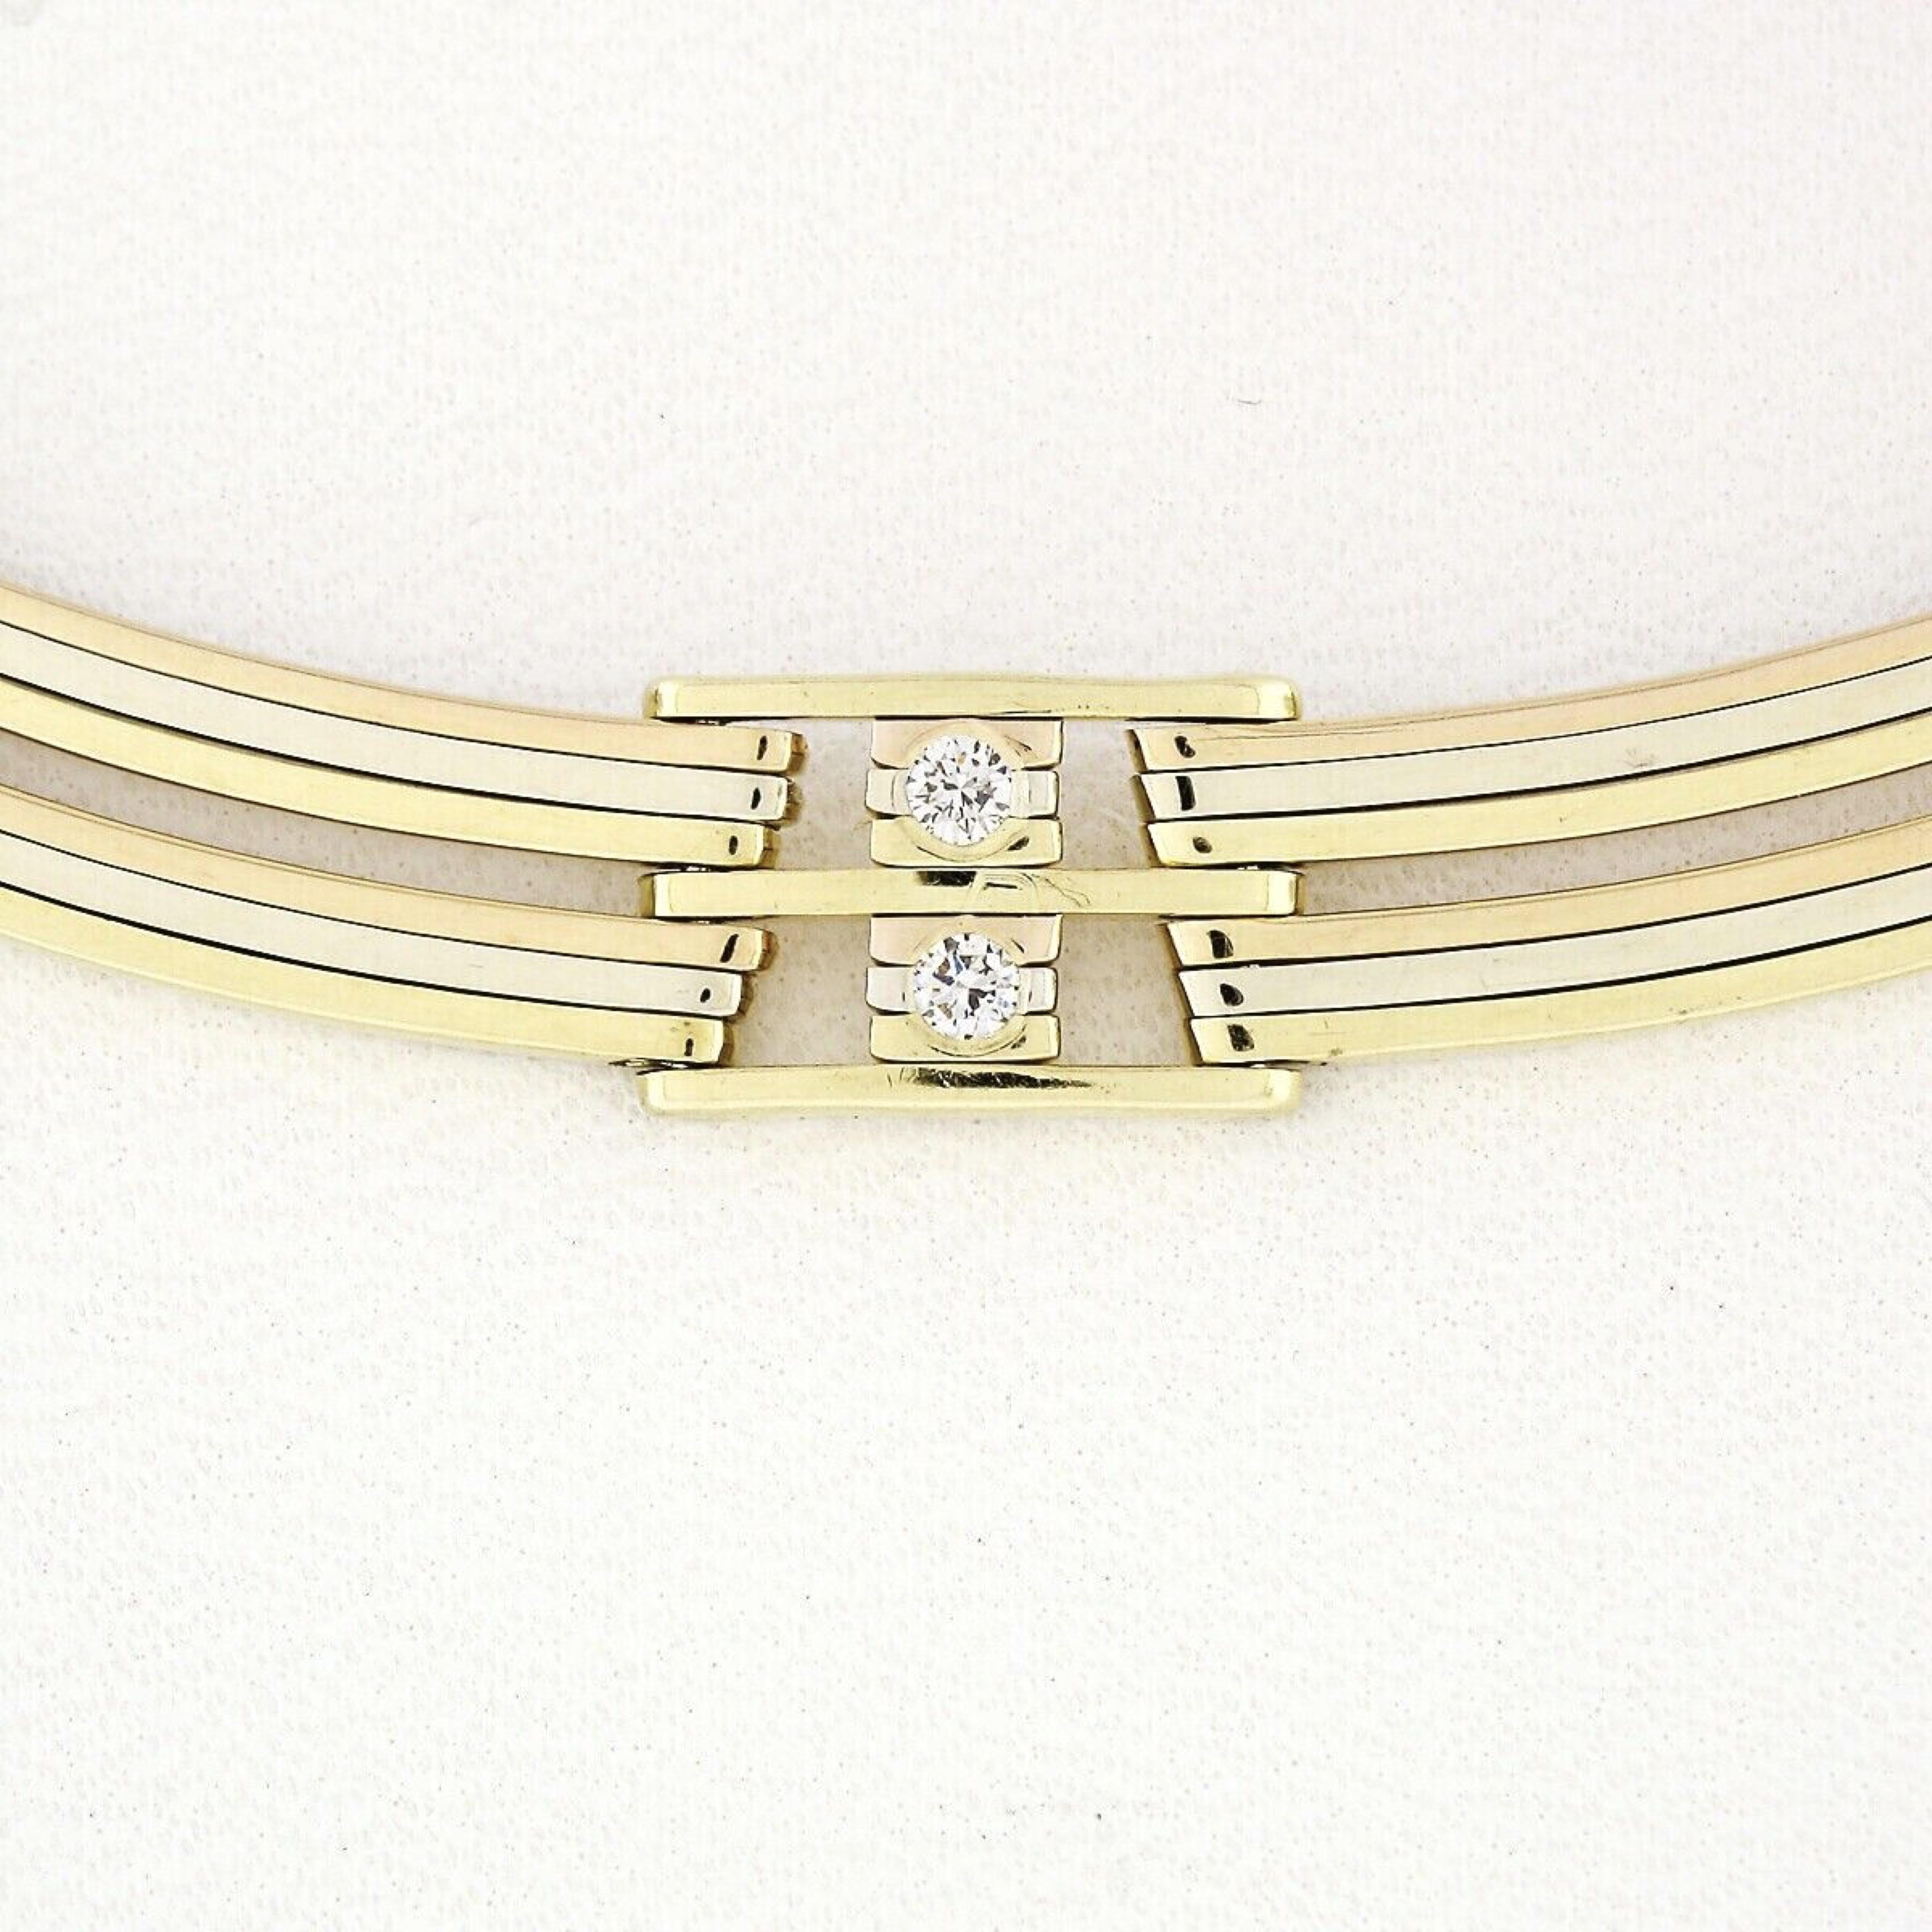 Nous avons ici un collier en diamants de très bonne qualité et solidement fabriqué, conçu par Chimento en Italie et réalisé en or jaune, rose et blanc 18 carats. Le collier présente un design vraiment unique. Il se compose de plaques individuelles